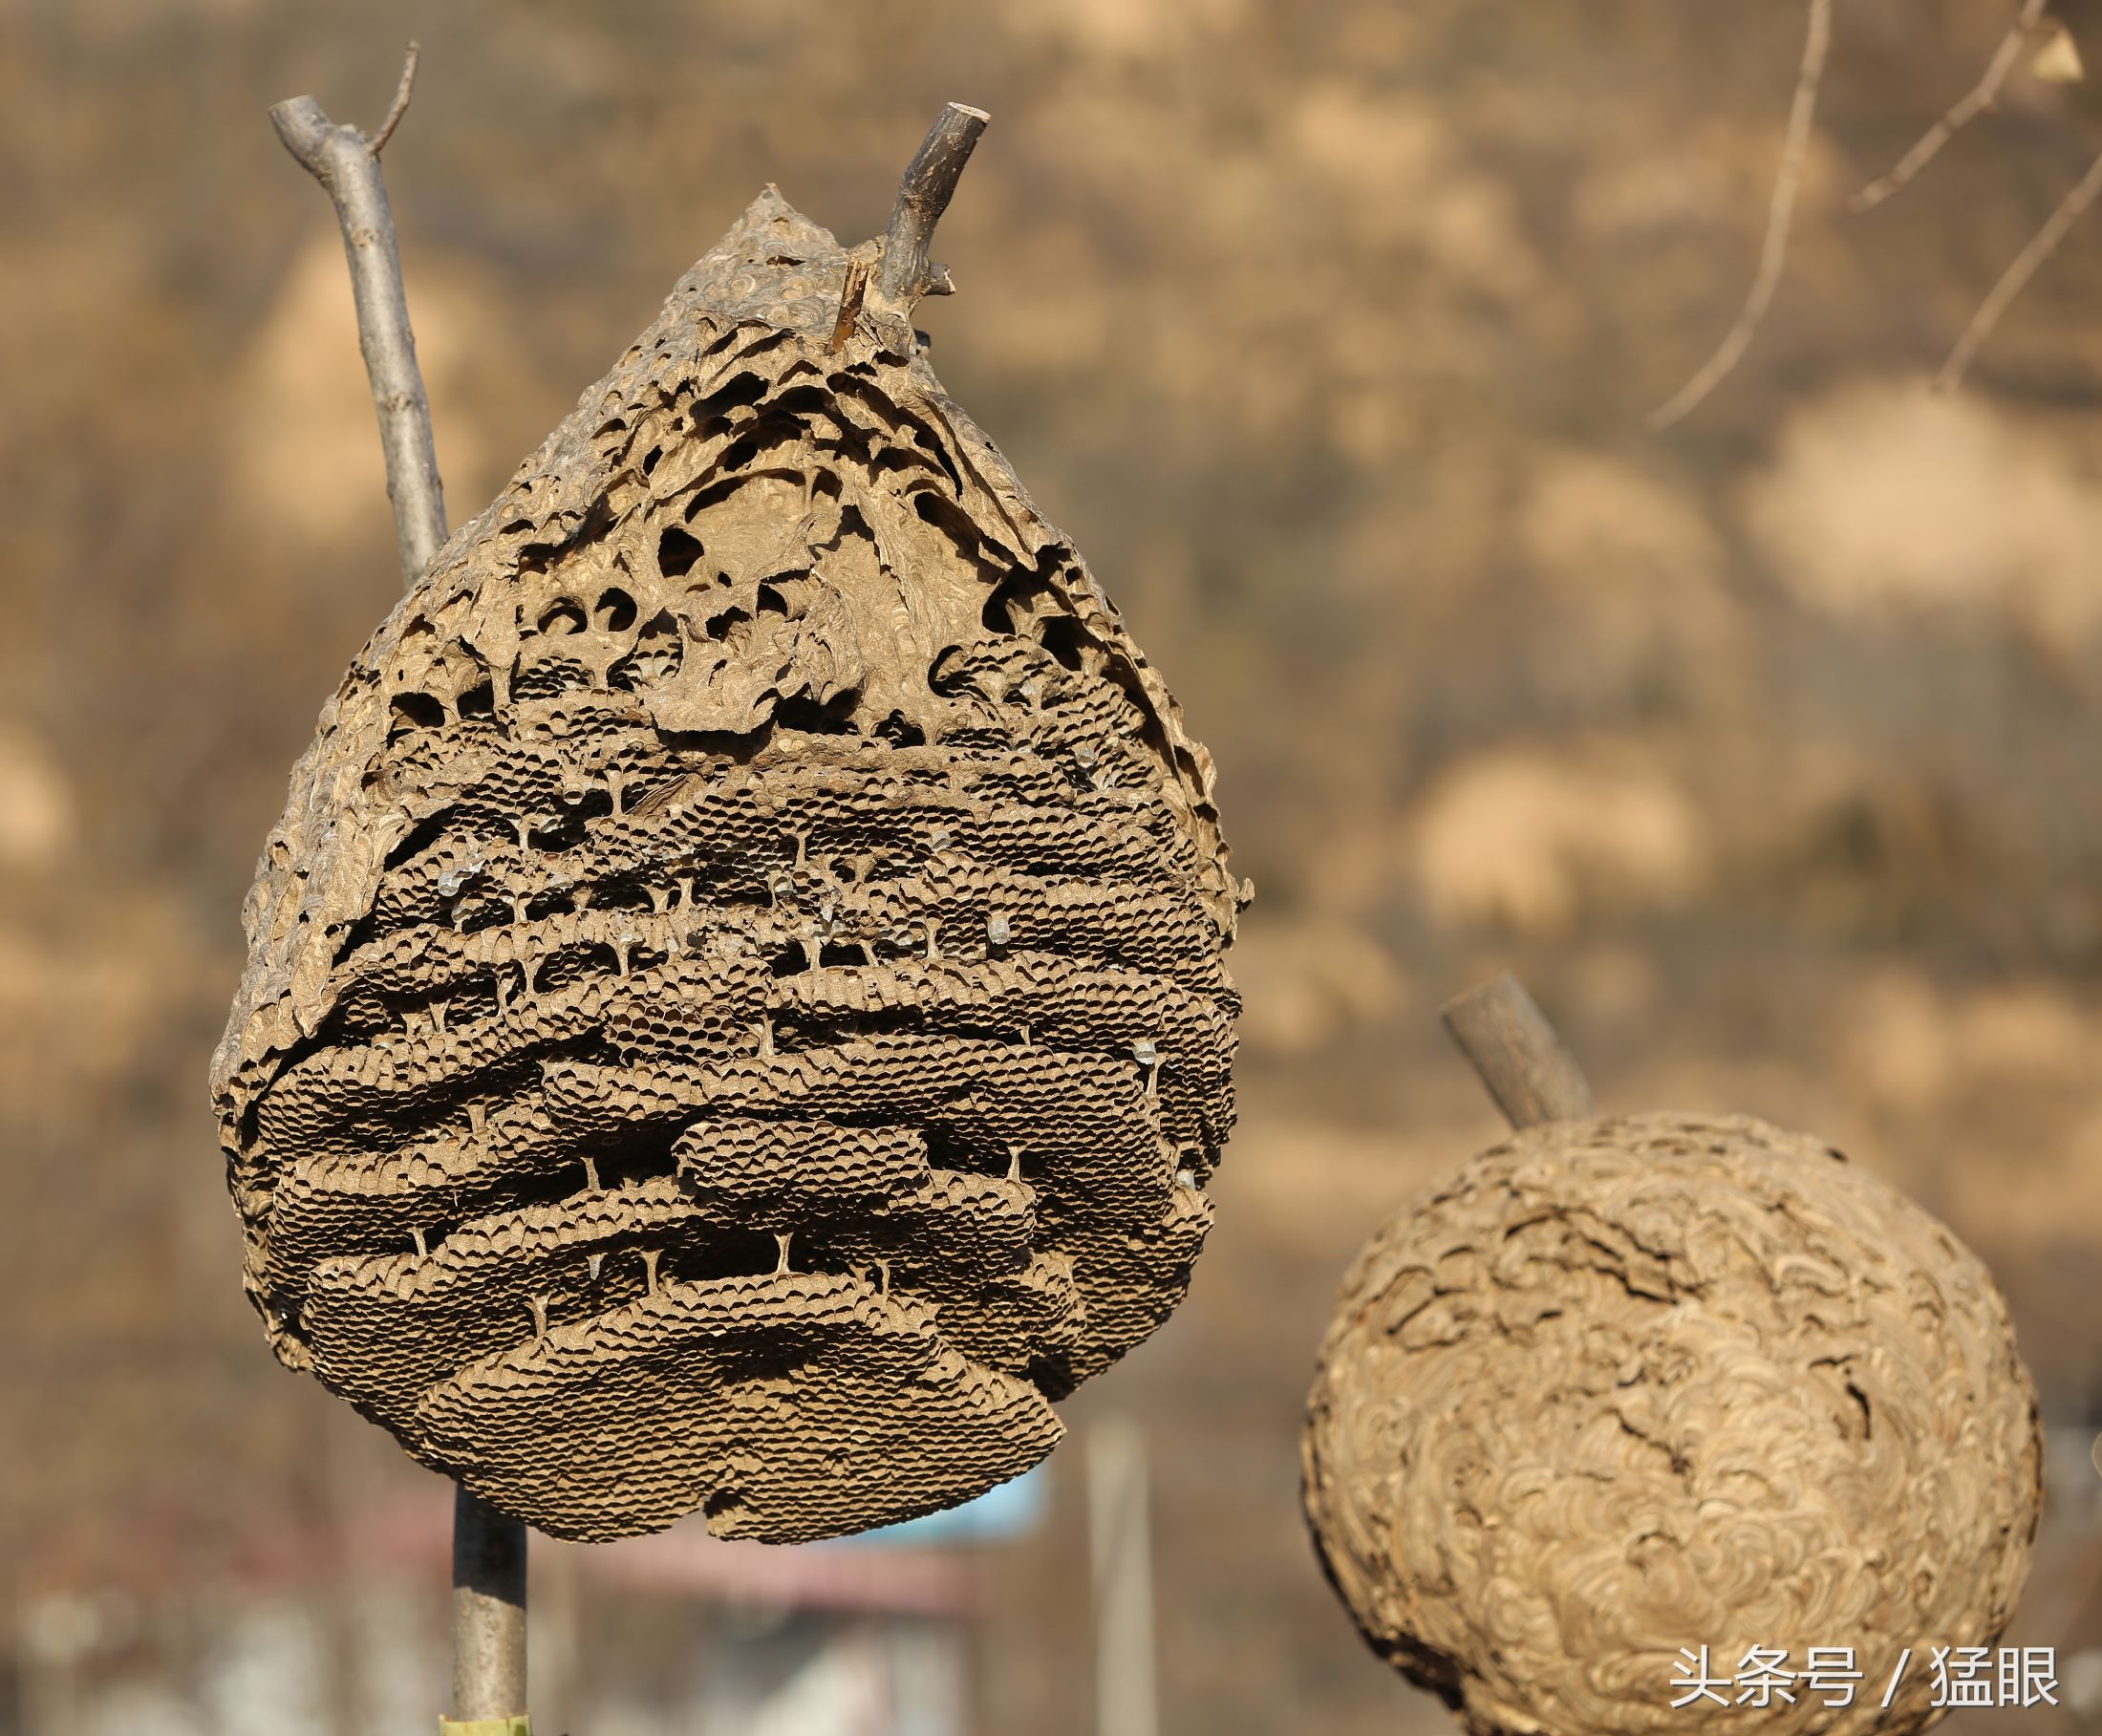 蜂巢蜂巢蜂巢 库存照片. 图片 包括有 昆虫, 敌意, 链子, 群落, 蜂巢, 蜂蜜, 蜂窝, 生态, 花蜜 - 201456576